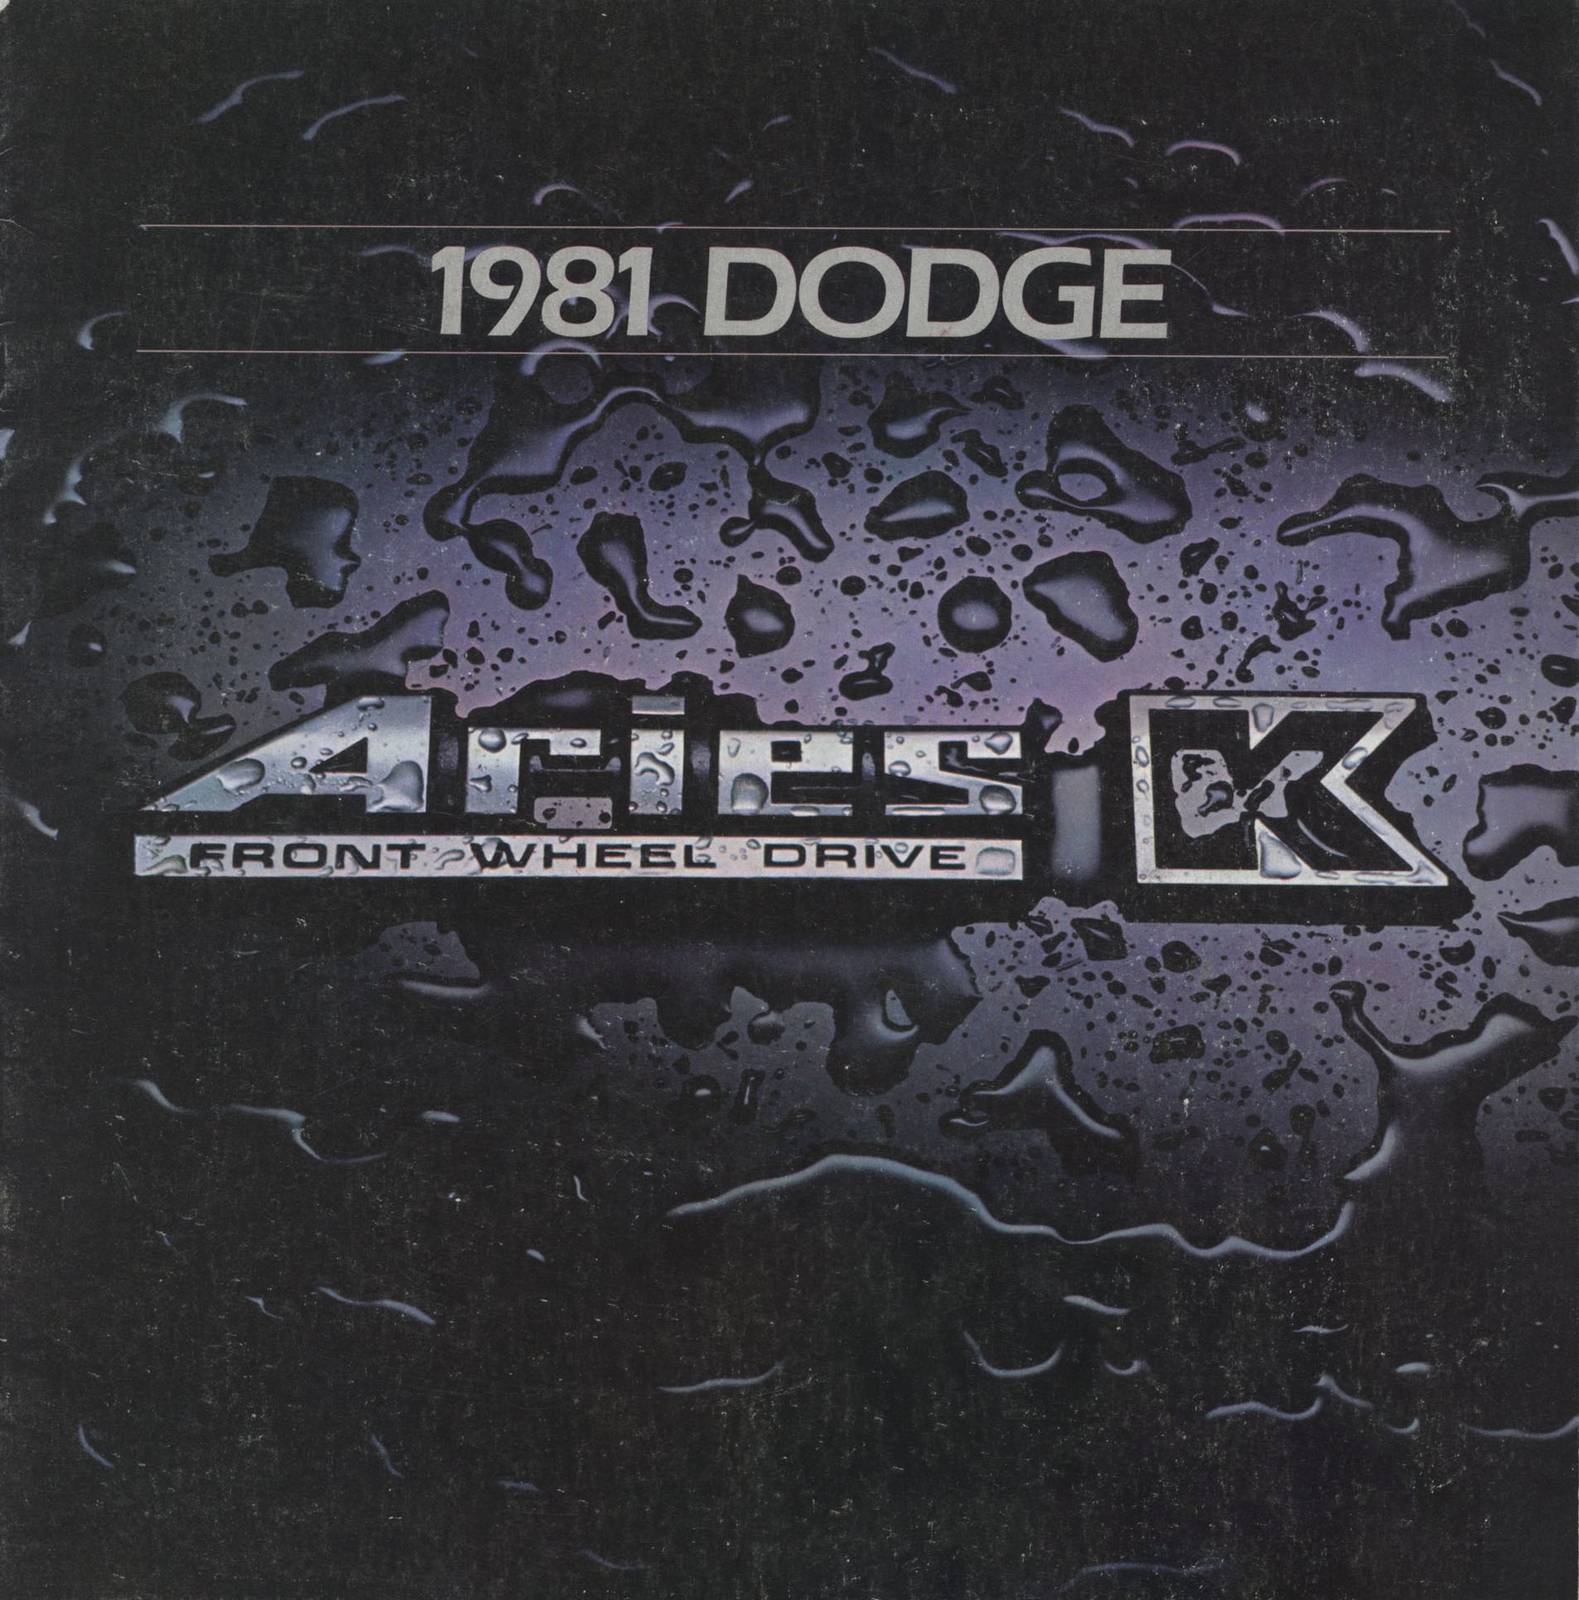 n_1981 Dodge Aries-01.jpg